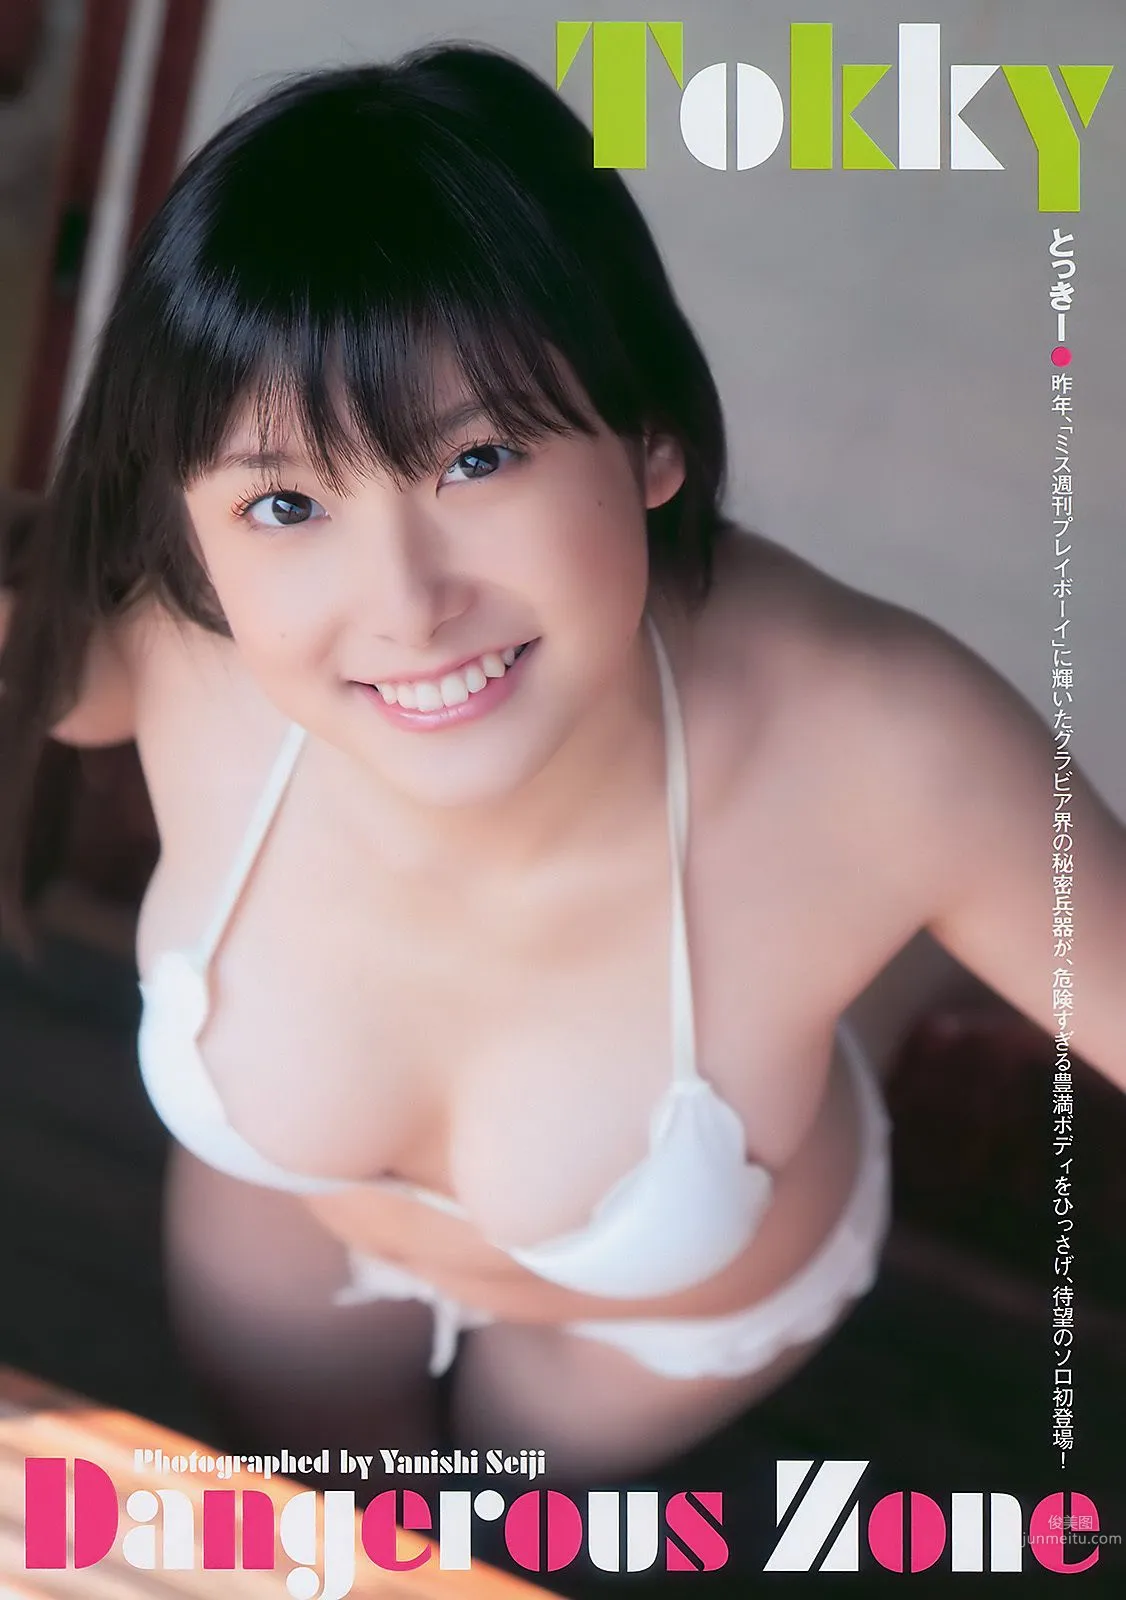 甲斐まり恵 とっきー 小森美果 岩佐真悠子 [Weekly Playboy] 2011年No.05 写真杂志8